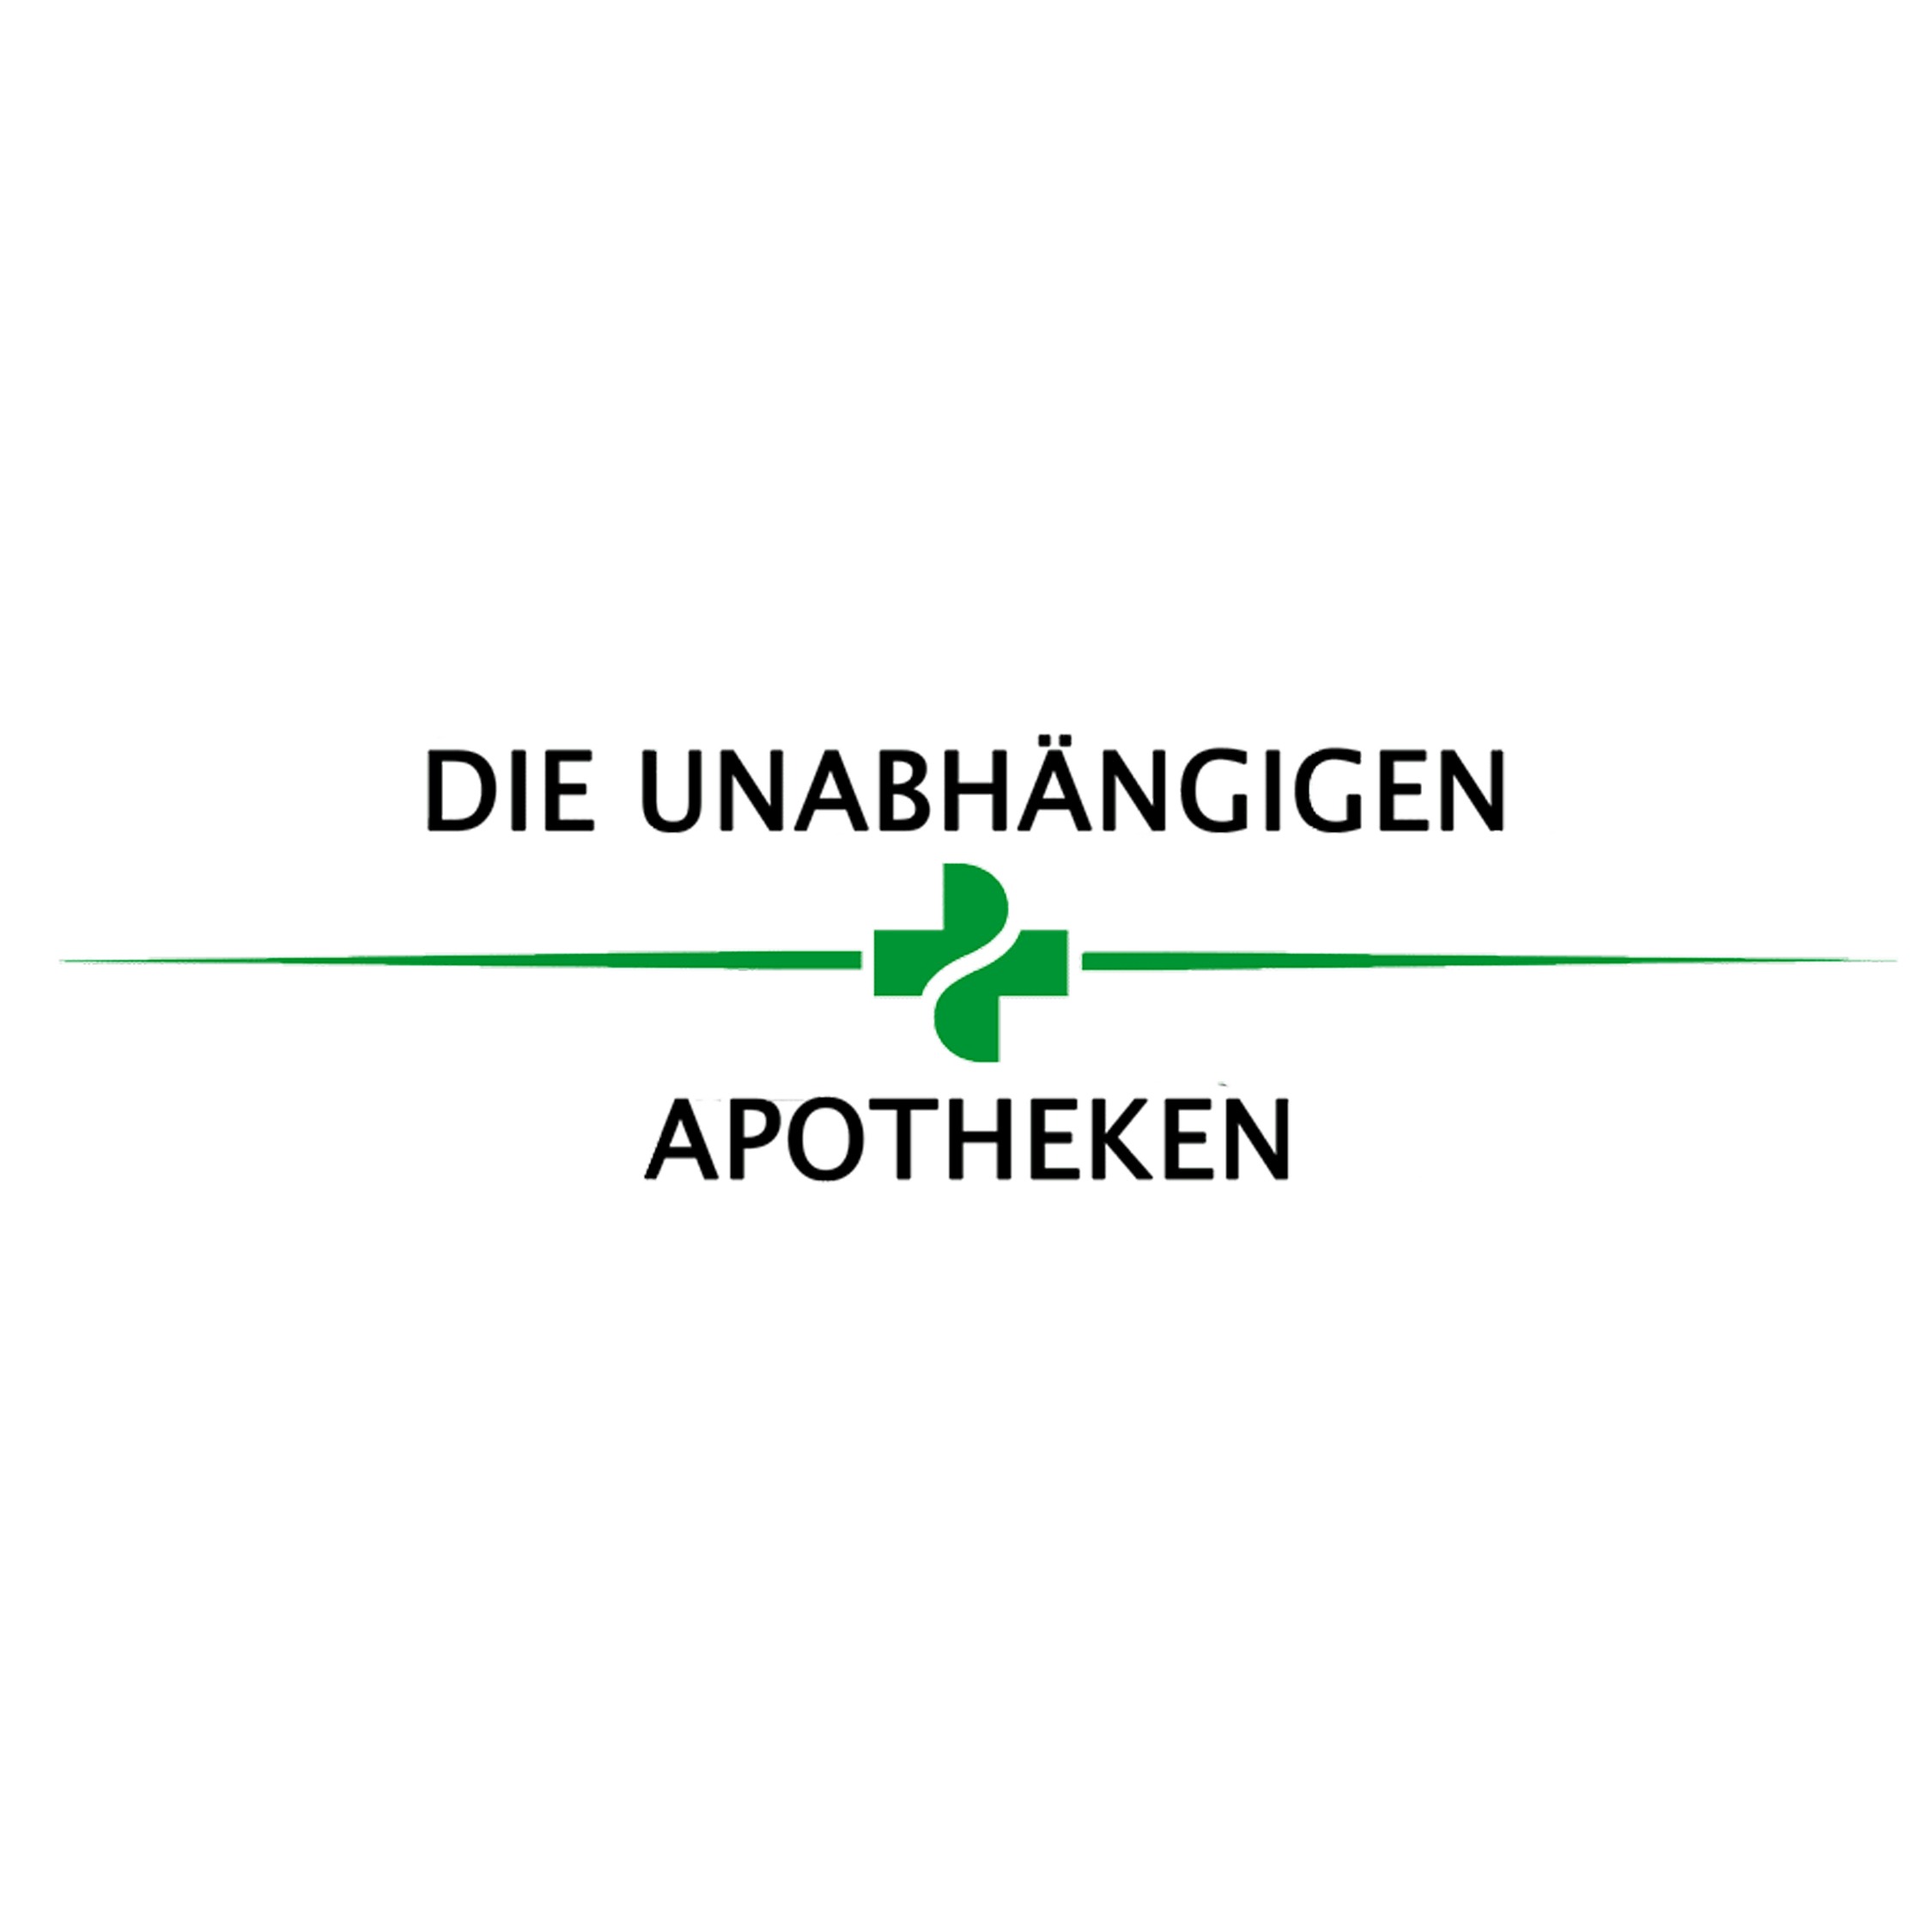 Neue Apotheke Logo